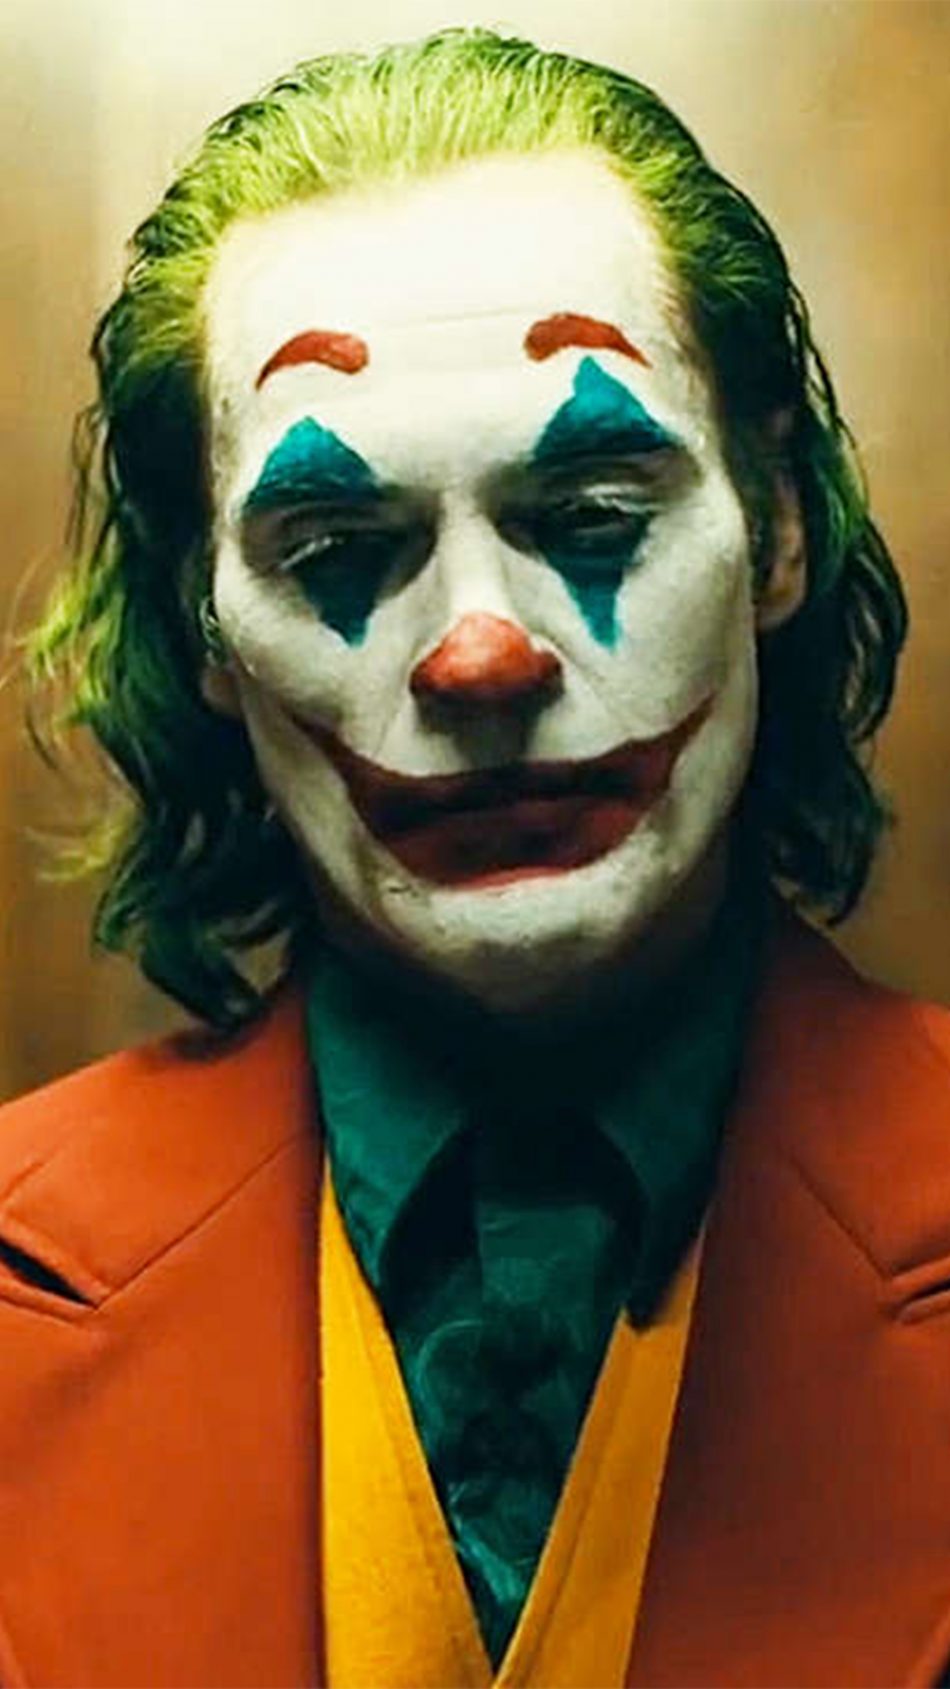 Joker Movie Wallpaper 4k For Mobile